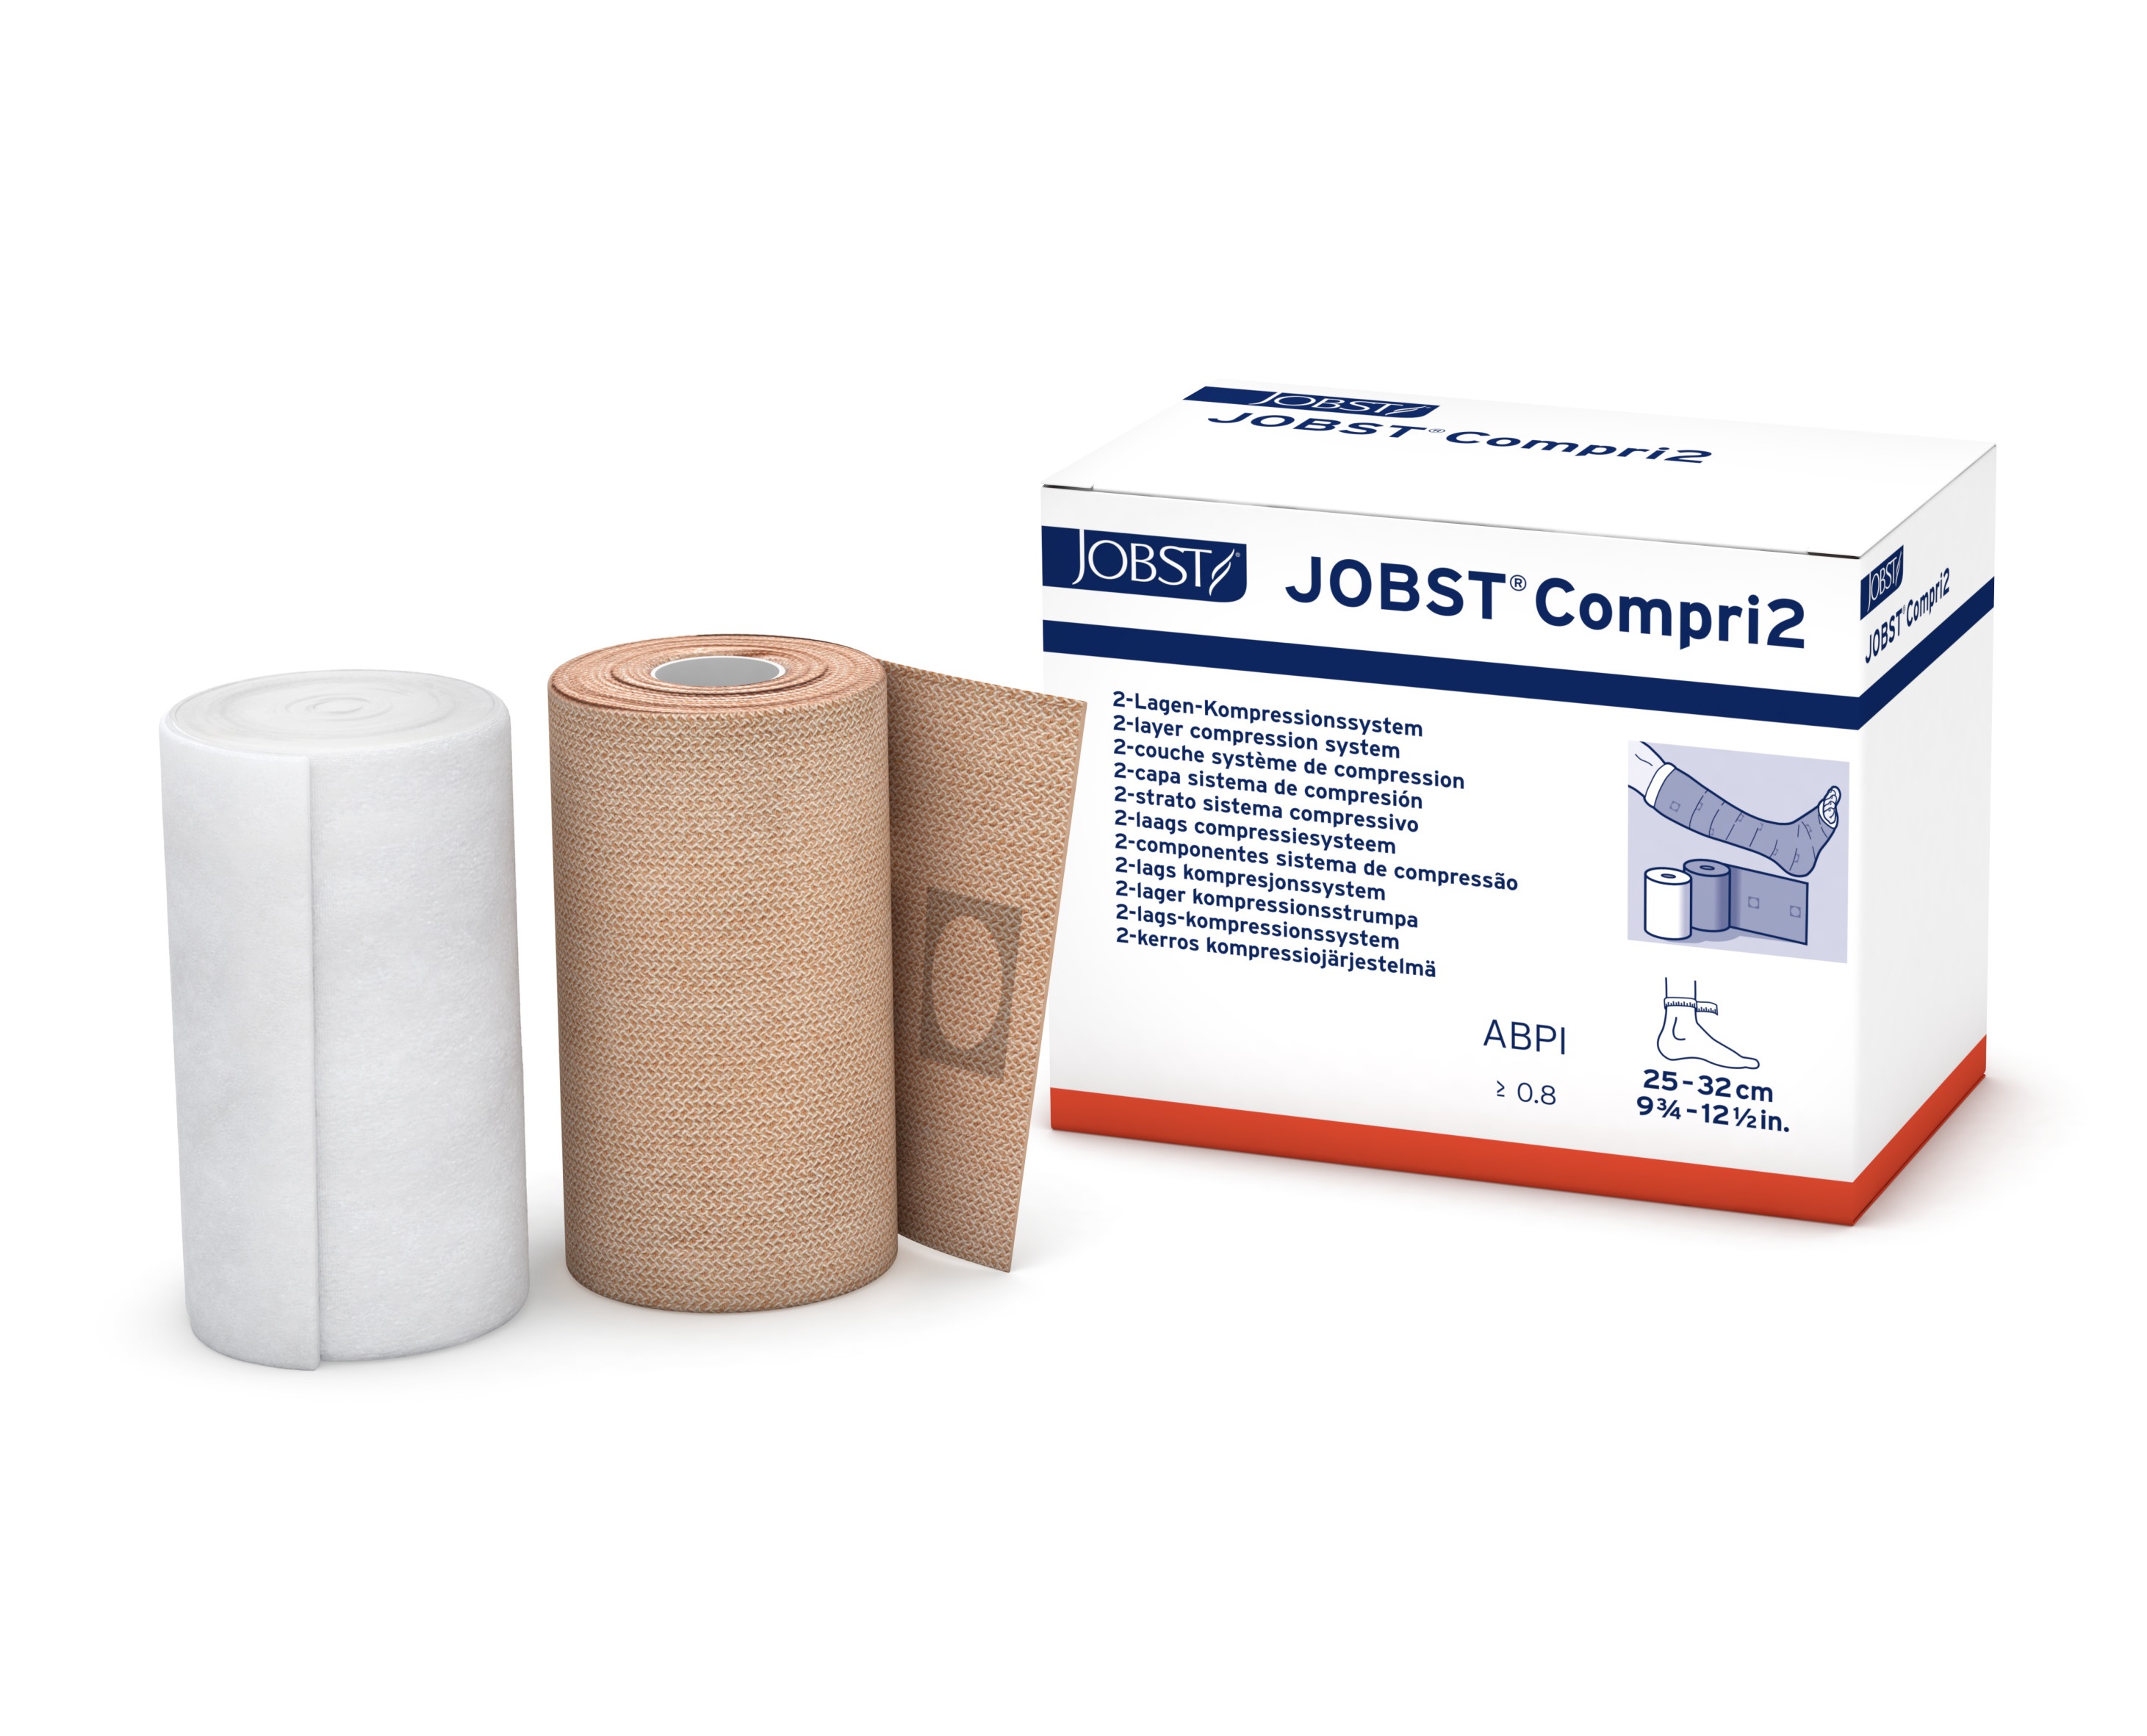 Jobst Compri2 Regular Compression (ABPI>0.8) 25-32cm - CTN of 5 image 0